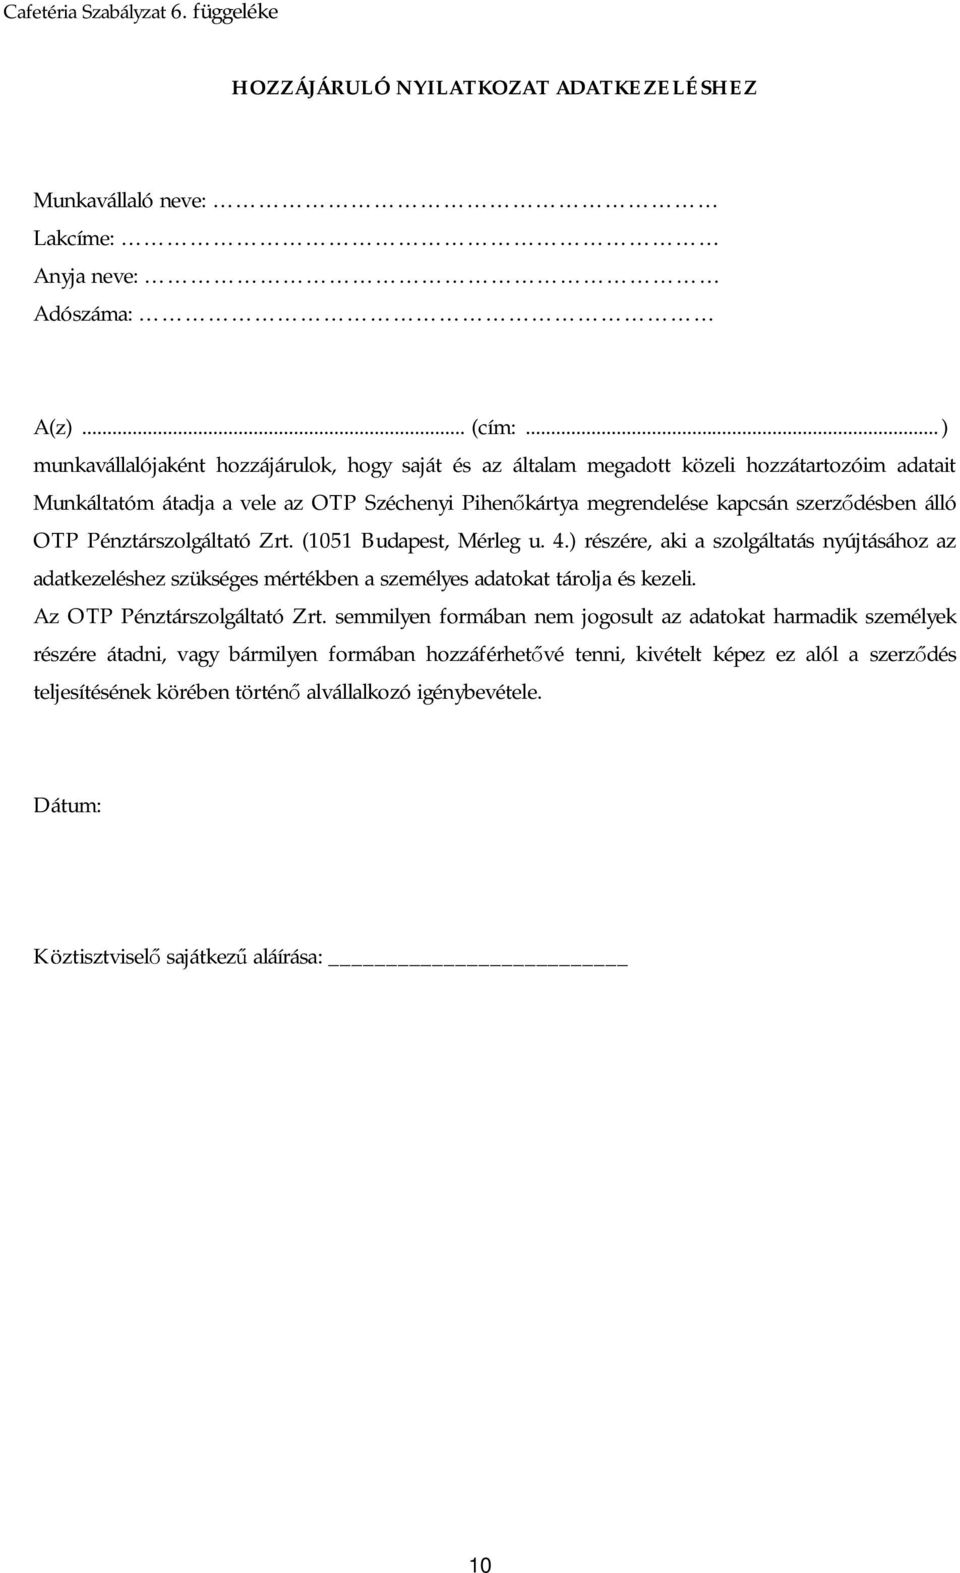 OTP Pénztárszolgáltató Zrt. (1051 Budapest, Mérleg u. 4.) részére, aki a szolgáltatás nyújtásához az adatkezeléshez szükséges a személyes adatokat tárolja és kezeli. Az OTP Pénztárszolgáltató Zrt.